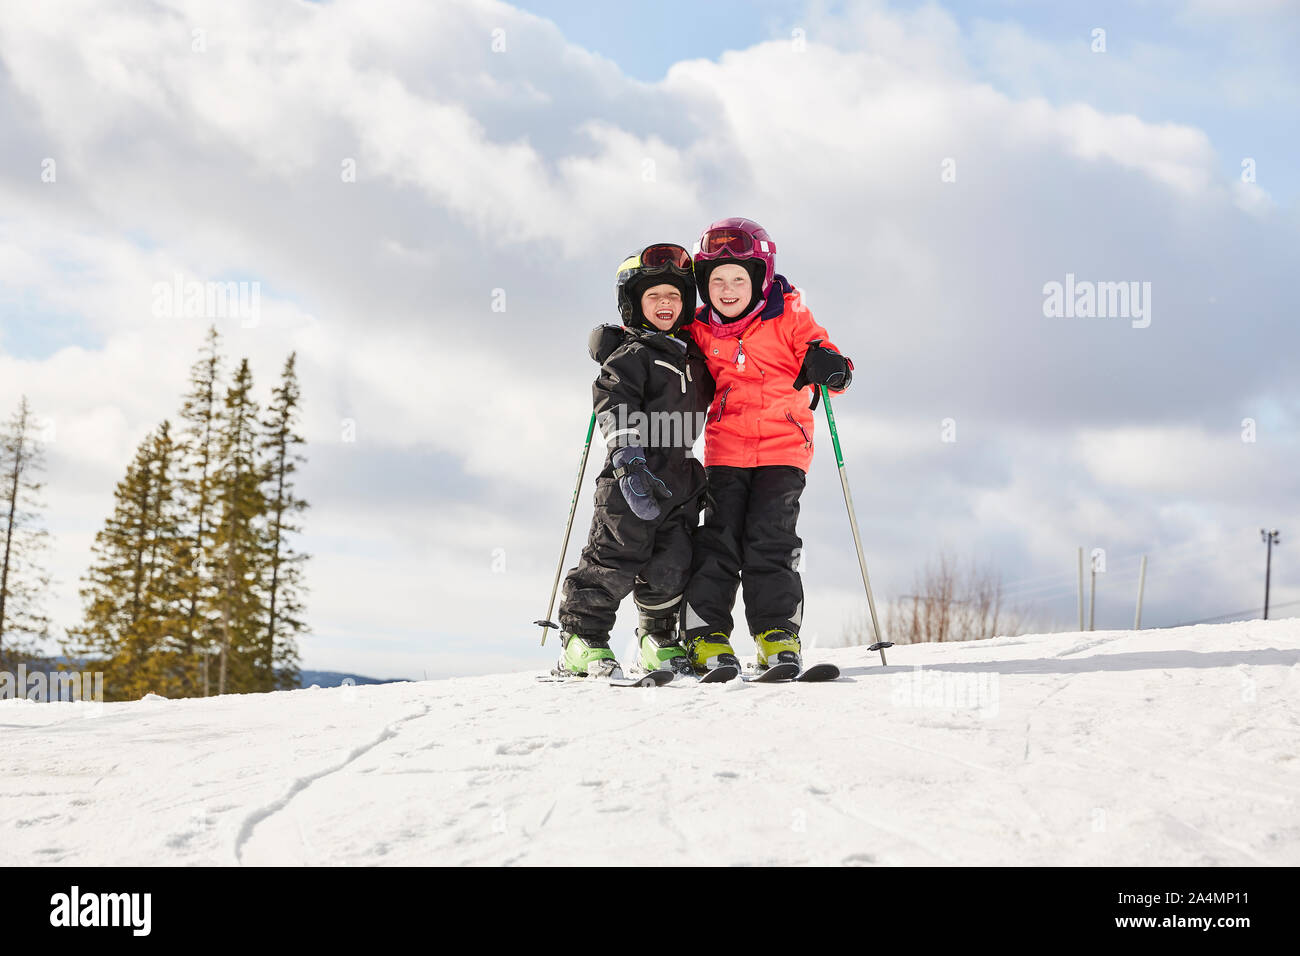 Kids skiing Stock Photo